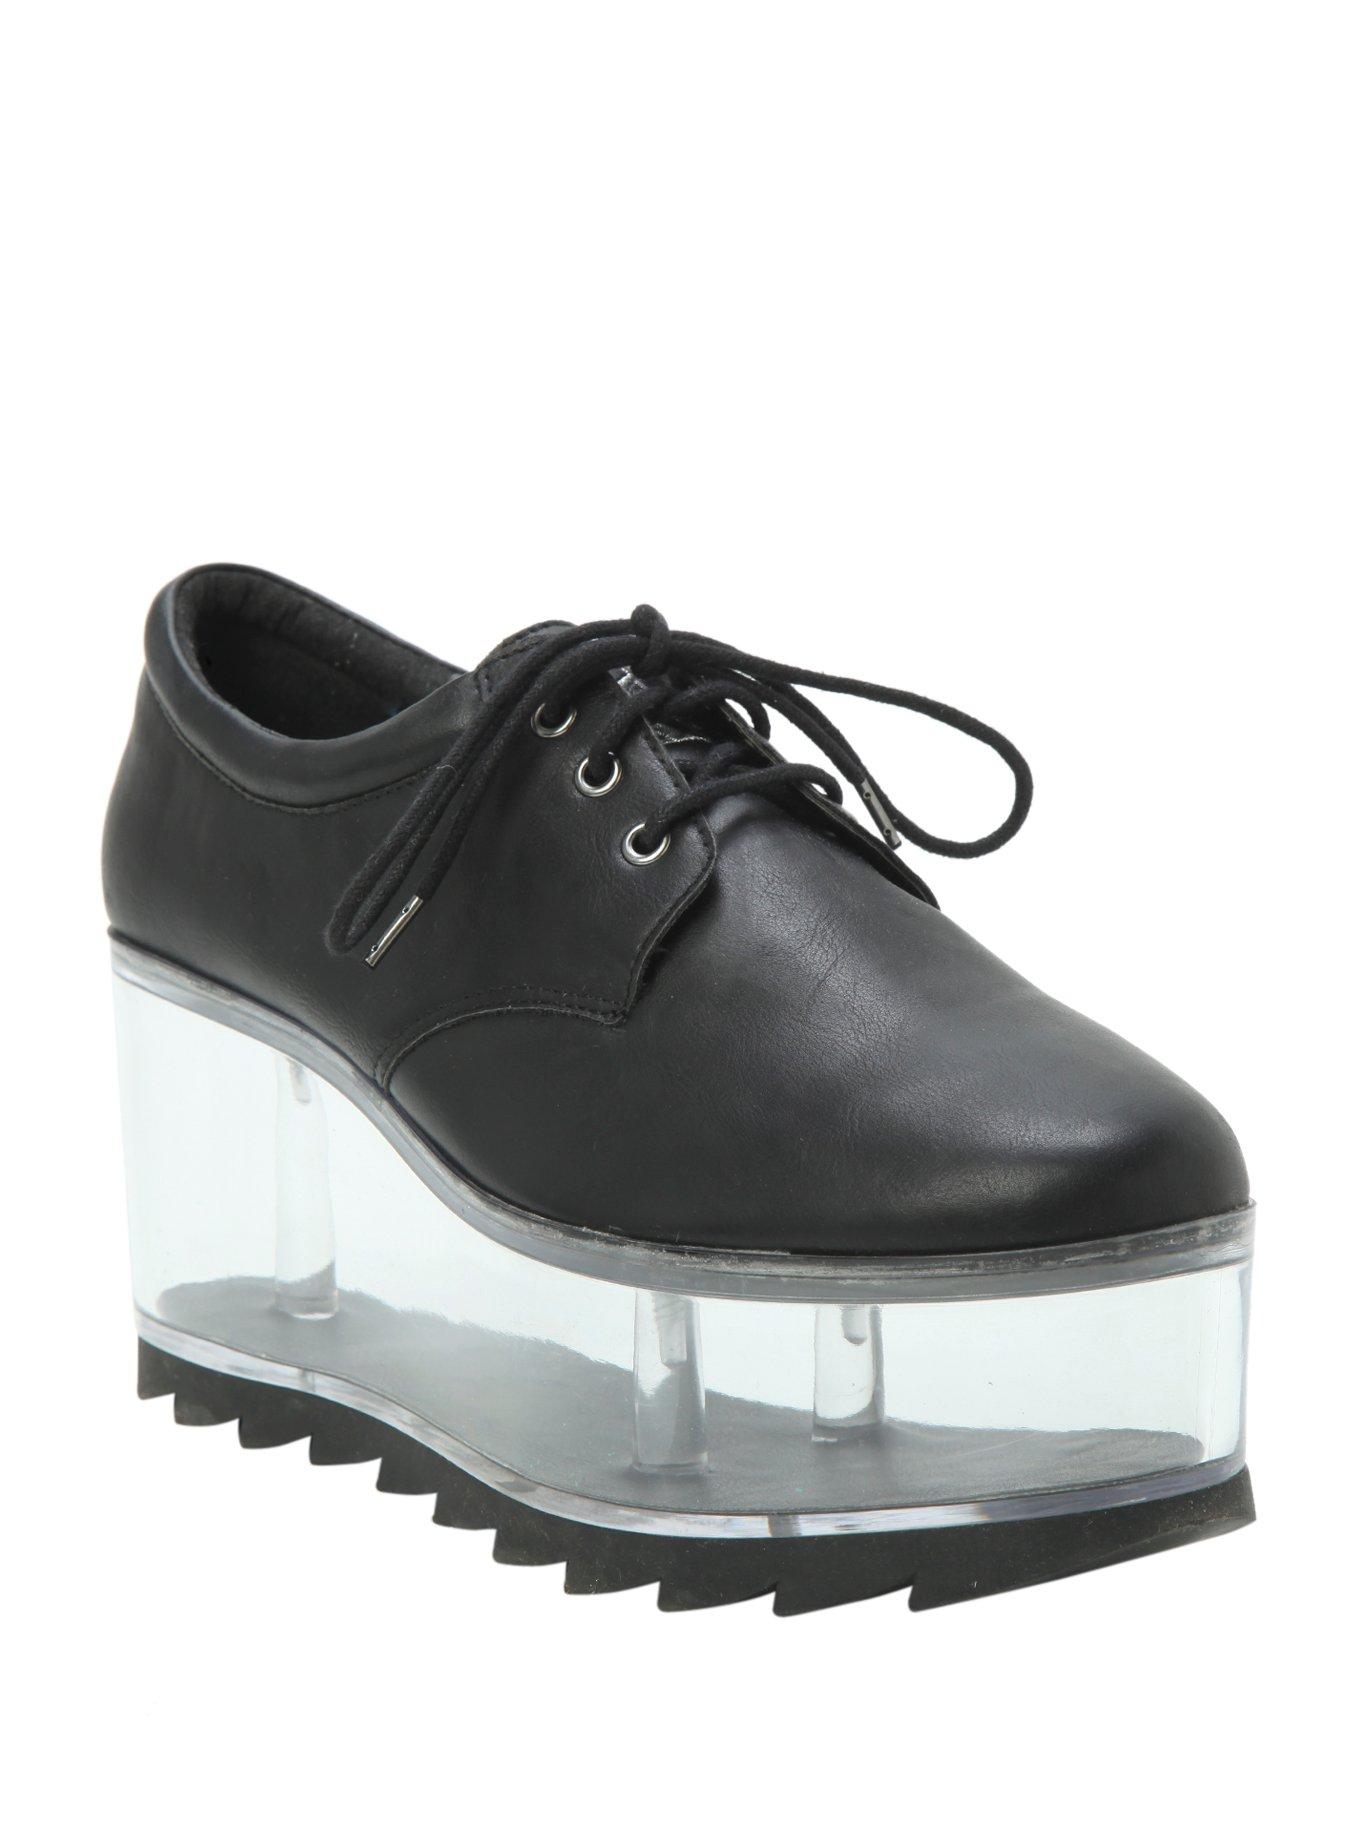 Black & Clear Platform Shoes, BLACK, hi-res